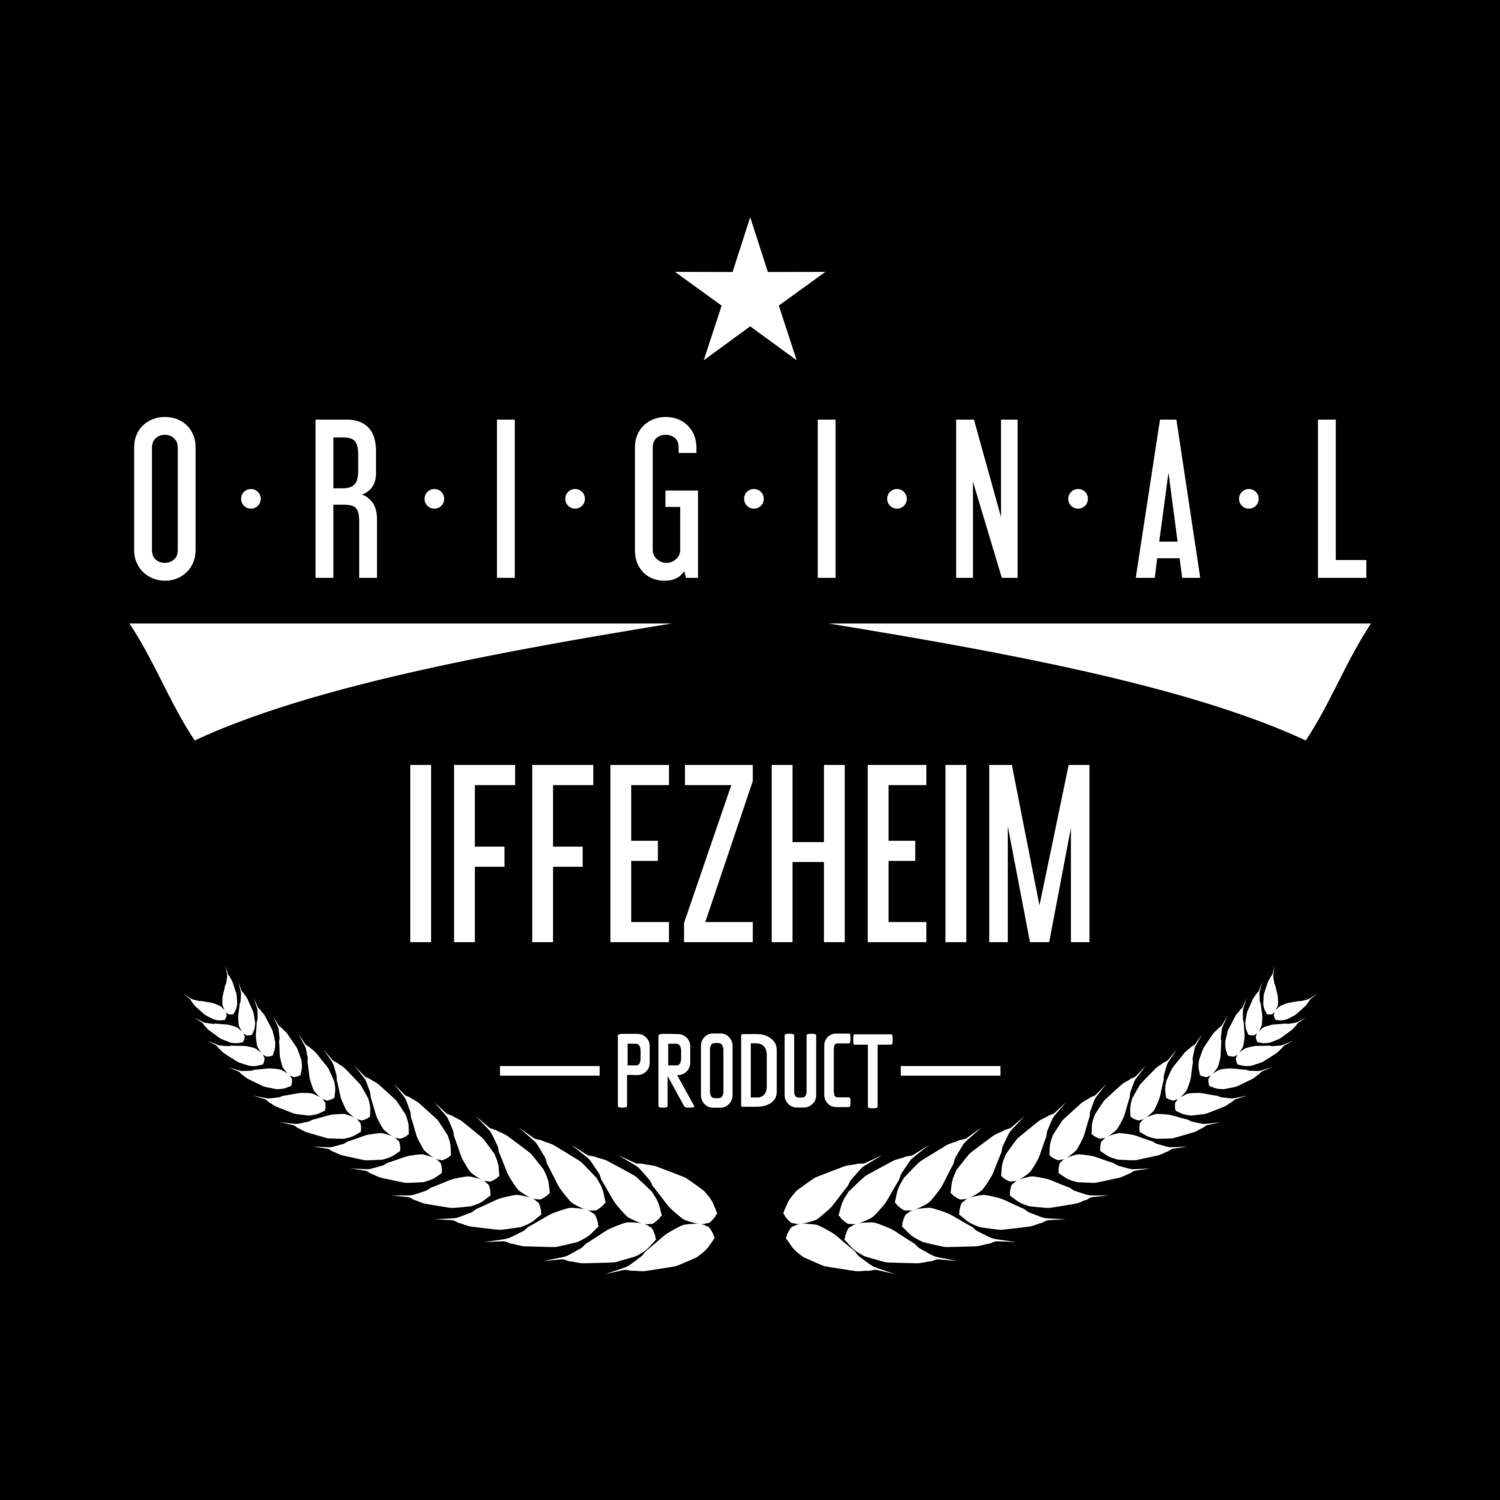 Iffezheim T-Shirt »Original Product«